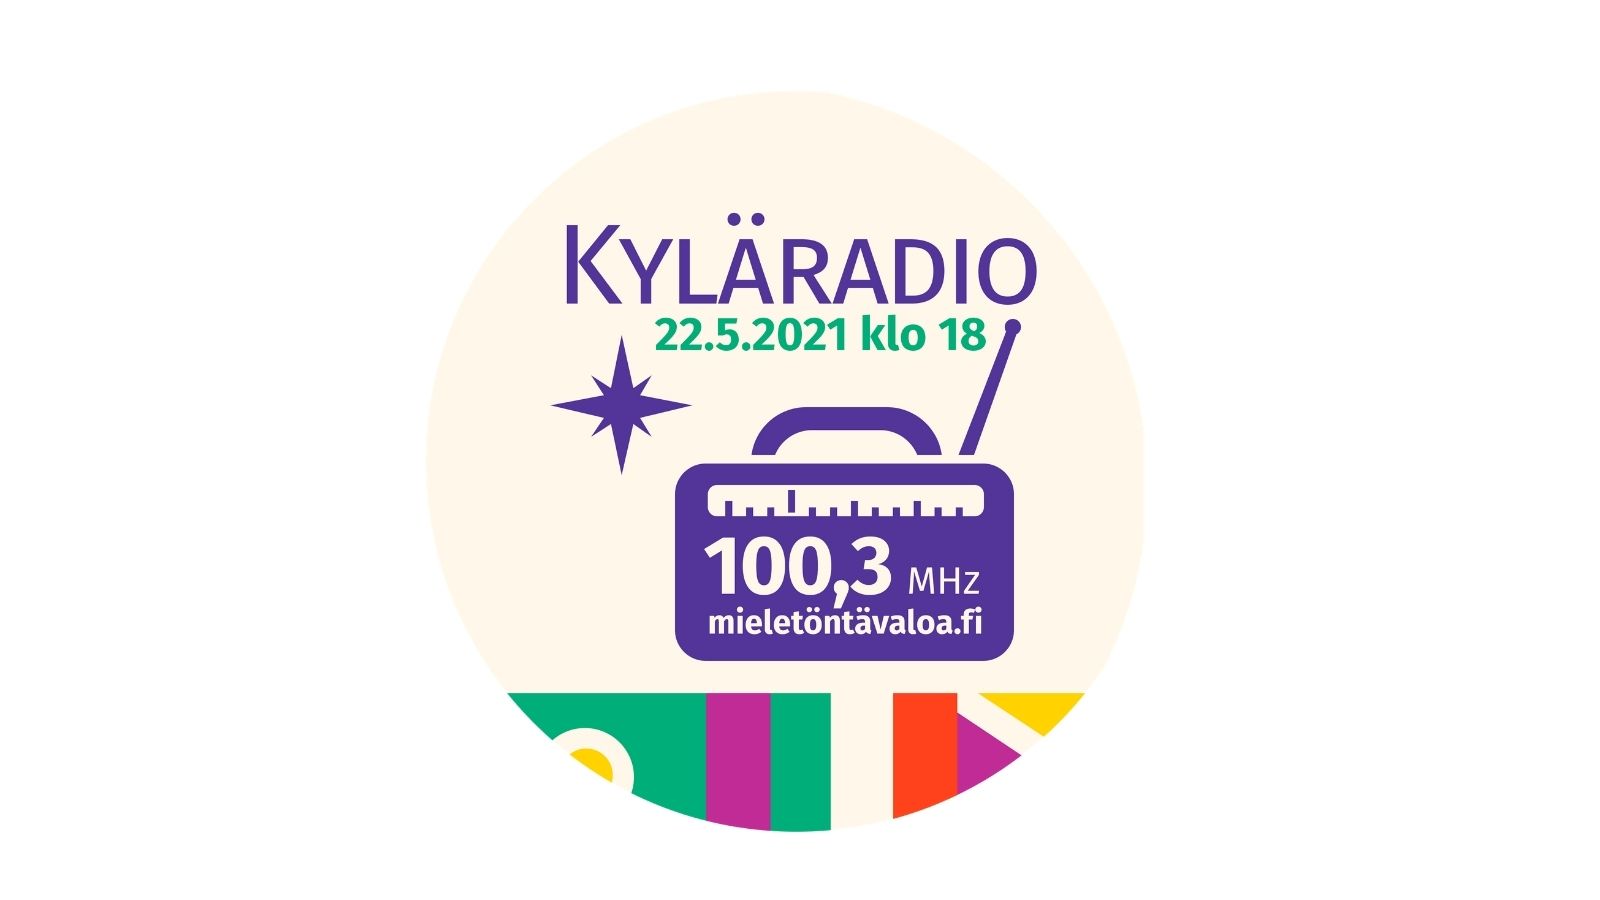 Piirretty radio ja teksti "Kyläradio, 22.5.2021 klo 18, 100,3MHz mieletöntävaloa.fi".